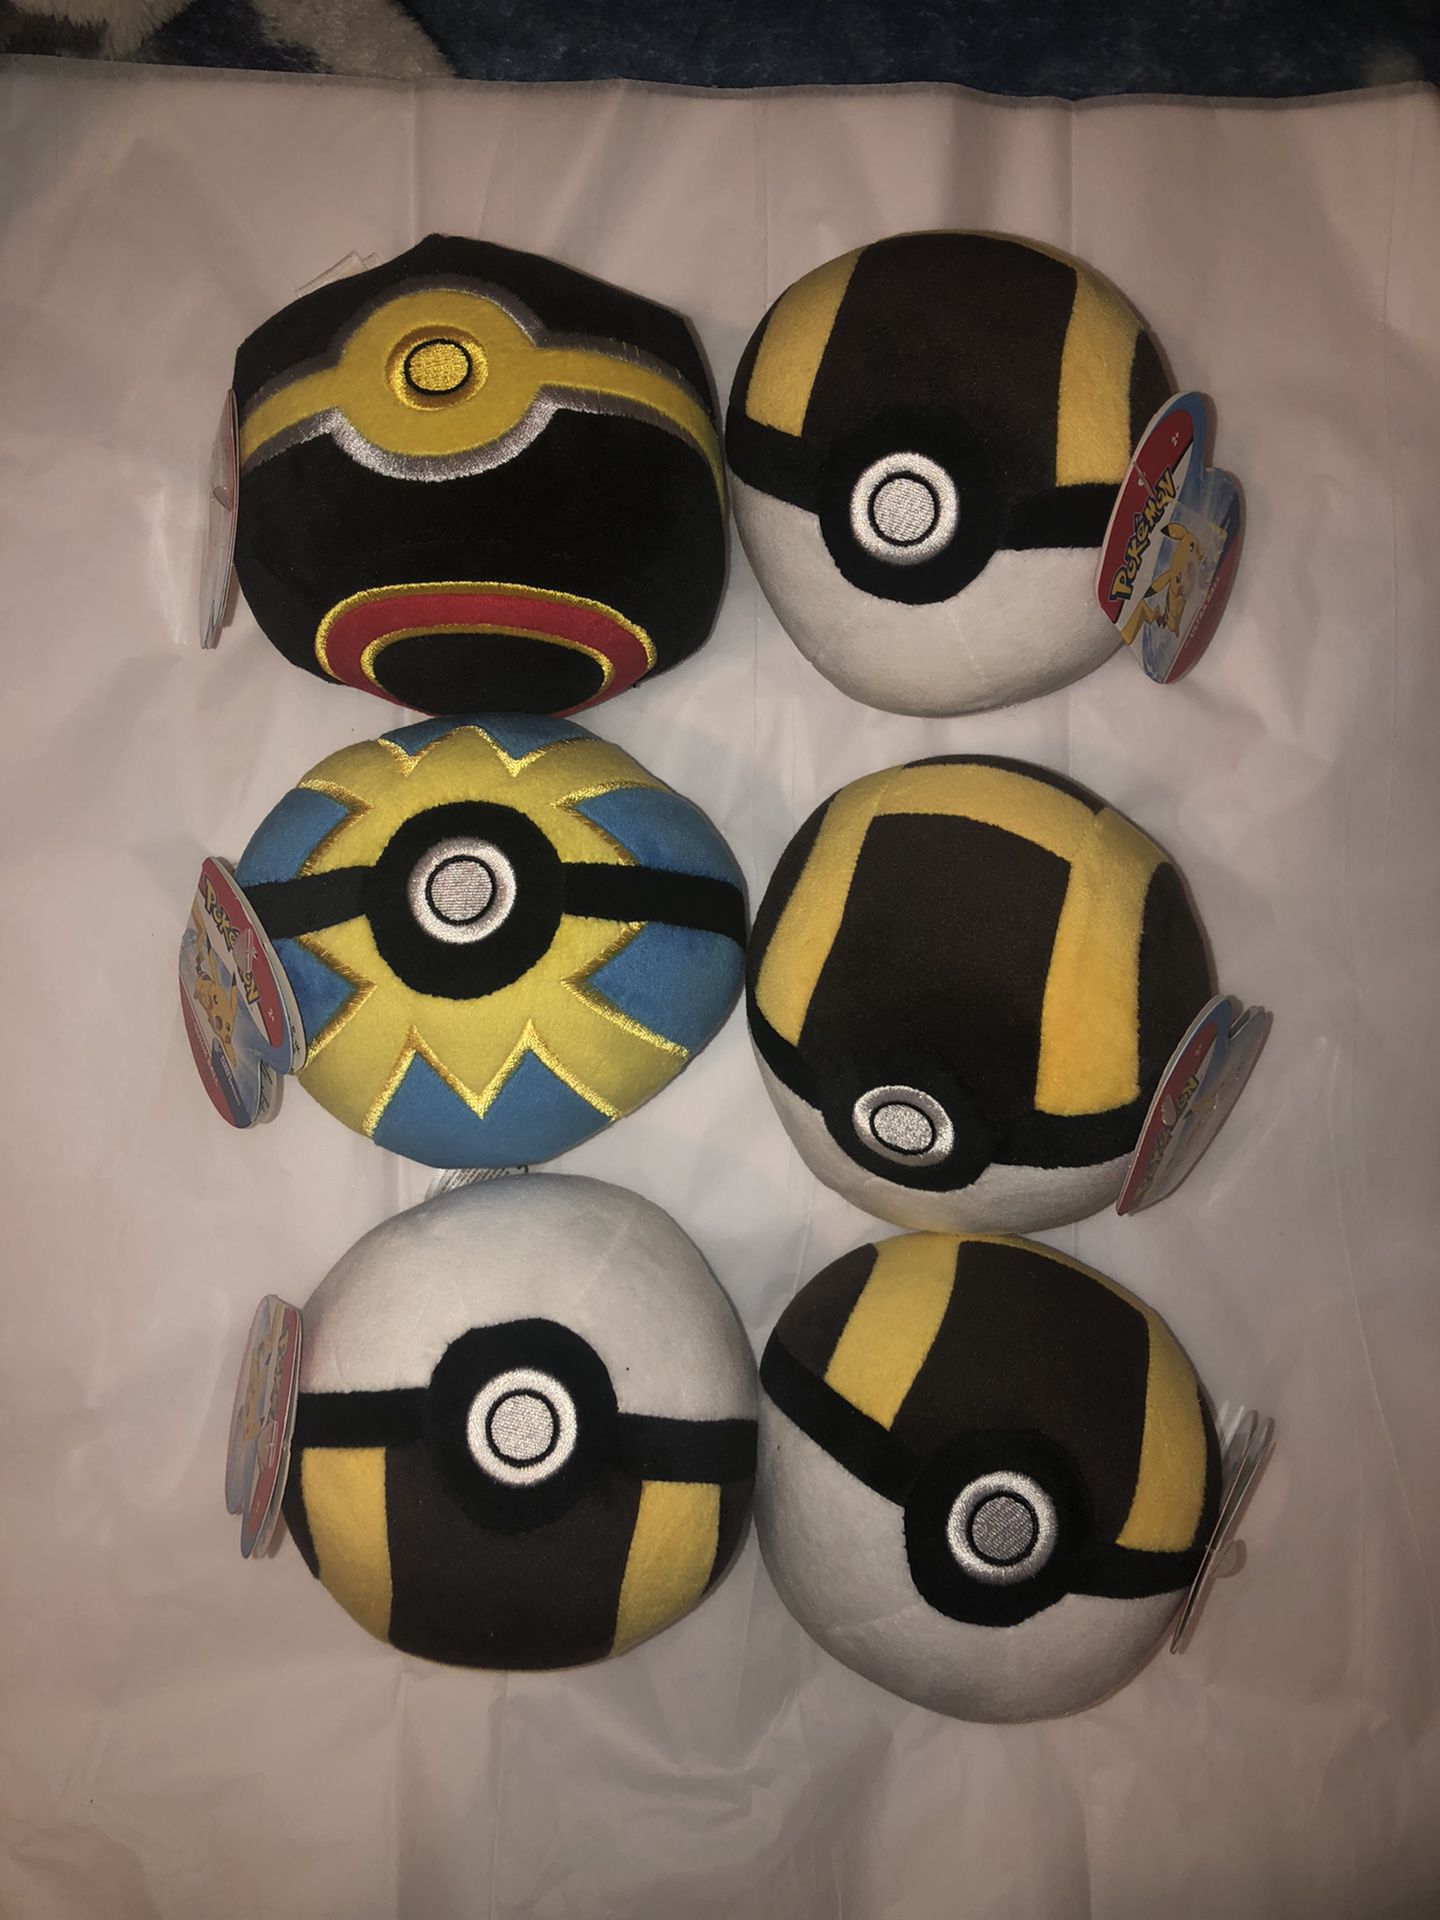 6 Pokemon Ultra Ball Stuffed Plusher’s Pokeball Toys